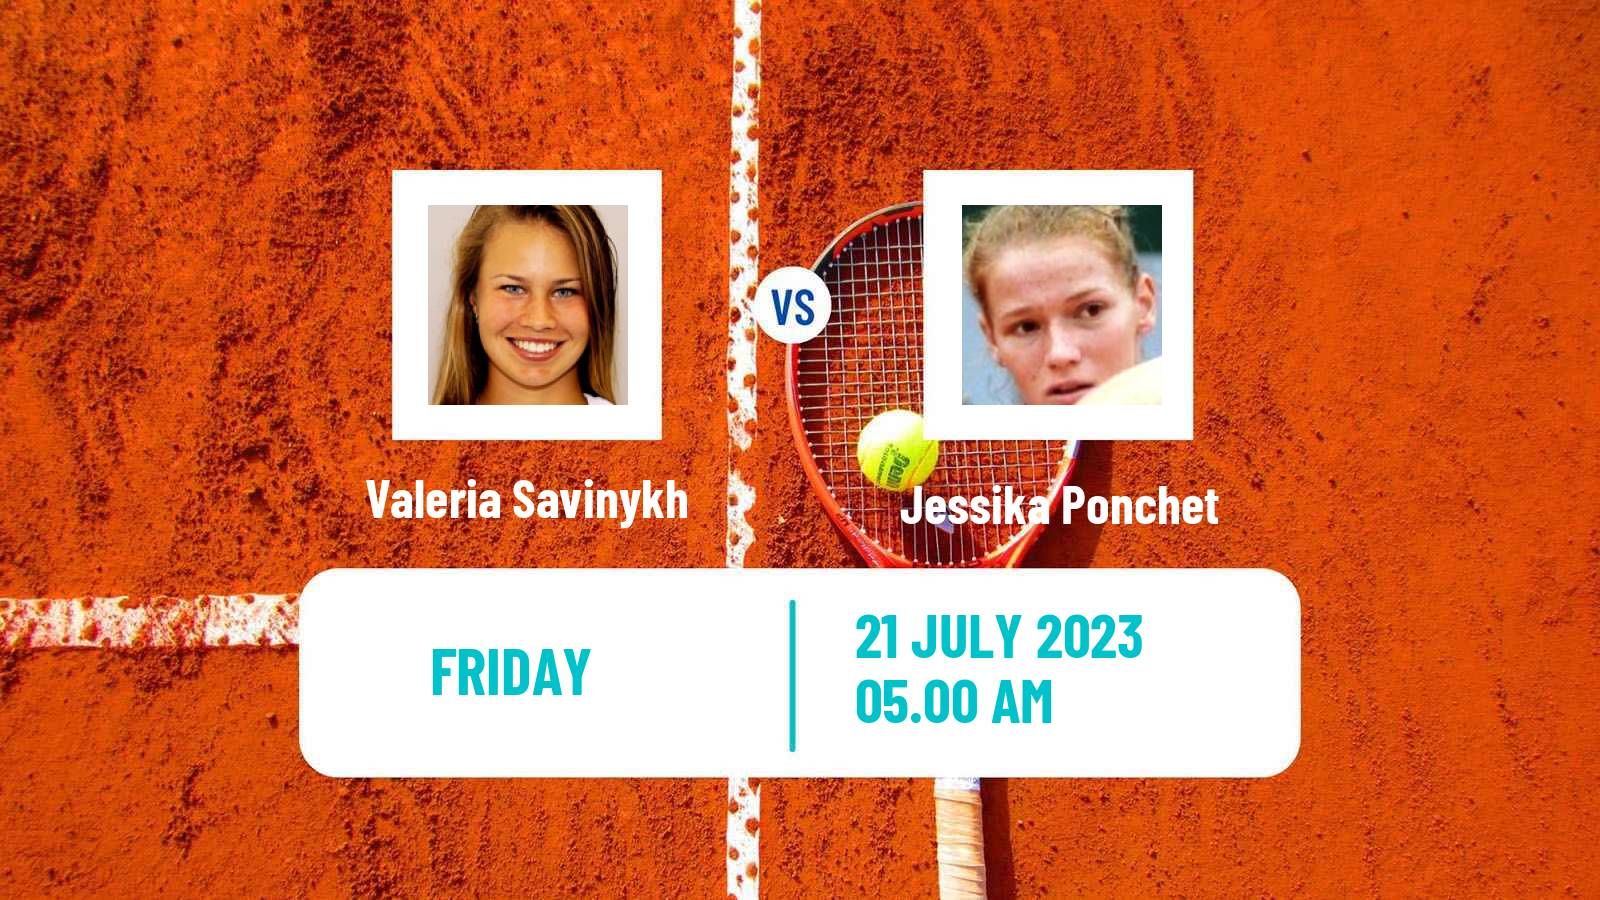 Tennis ITF W100 Vitoria Gasteiz Women Valeria Savinykh - Jessika Ponchet